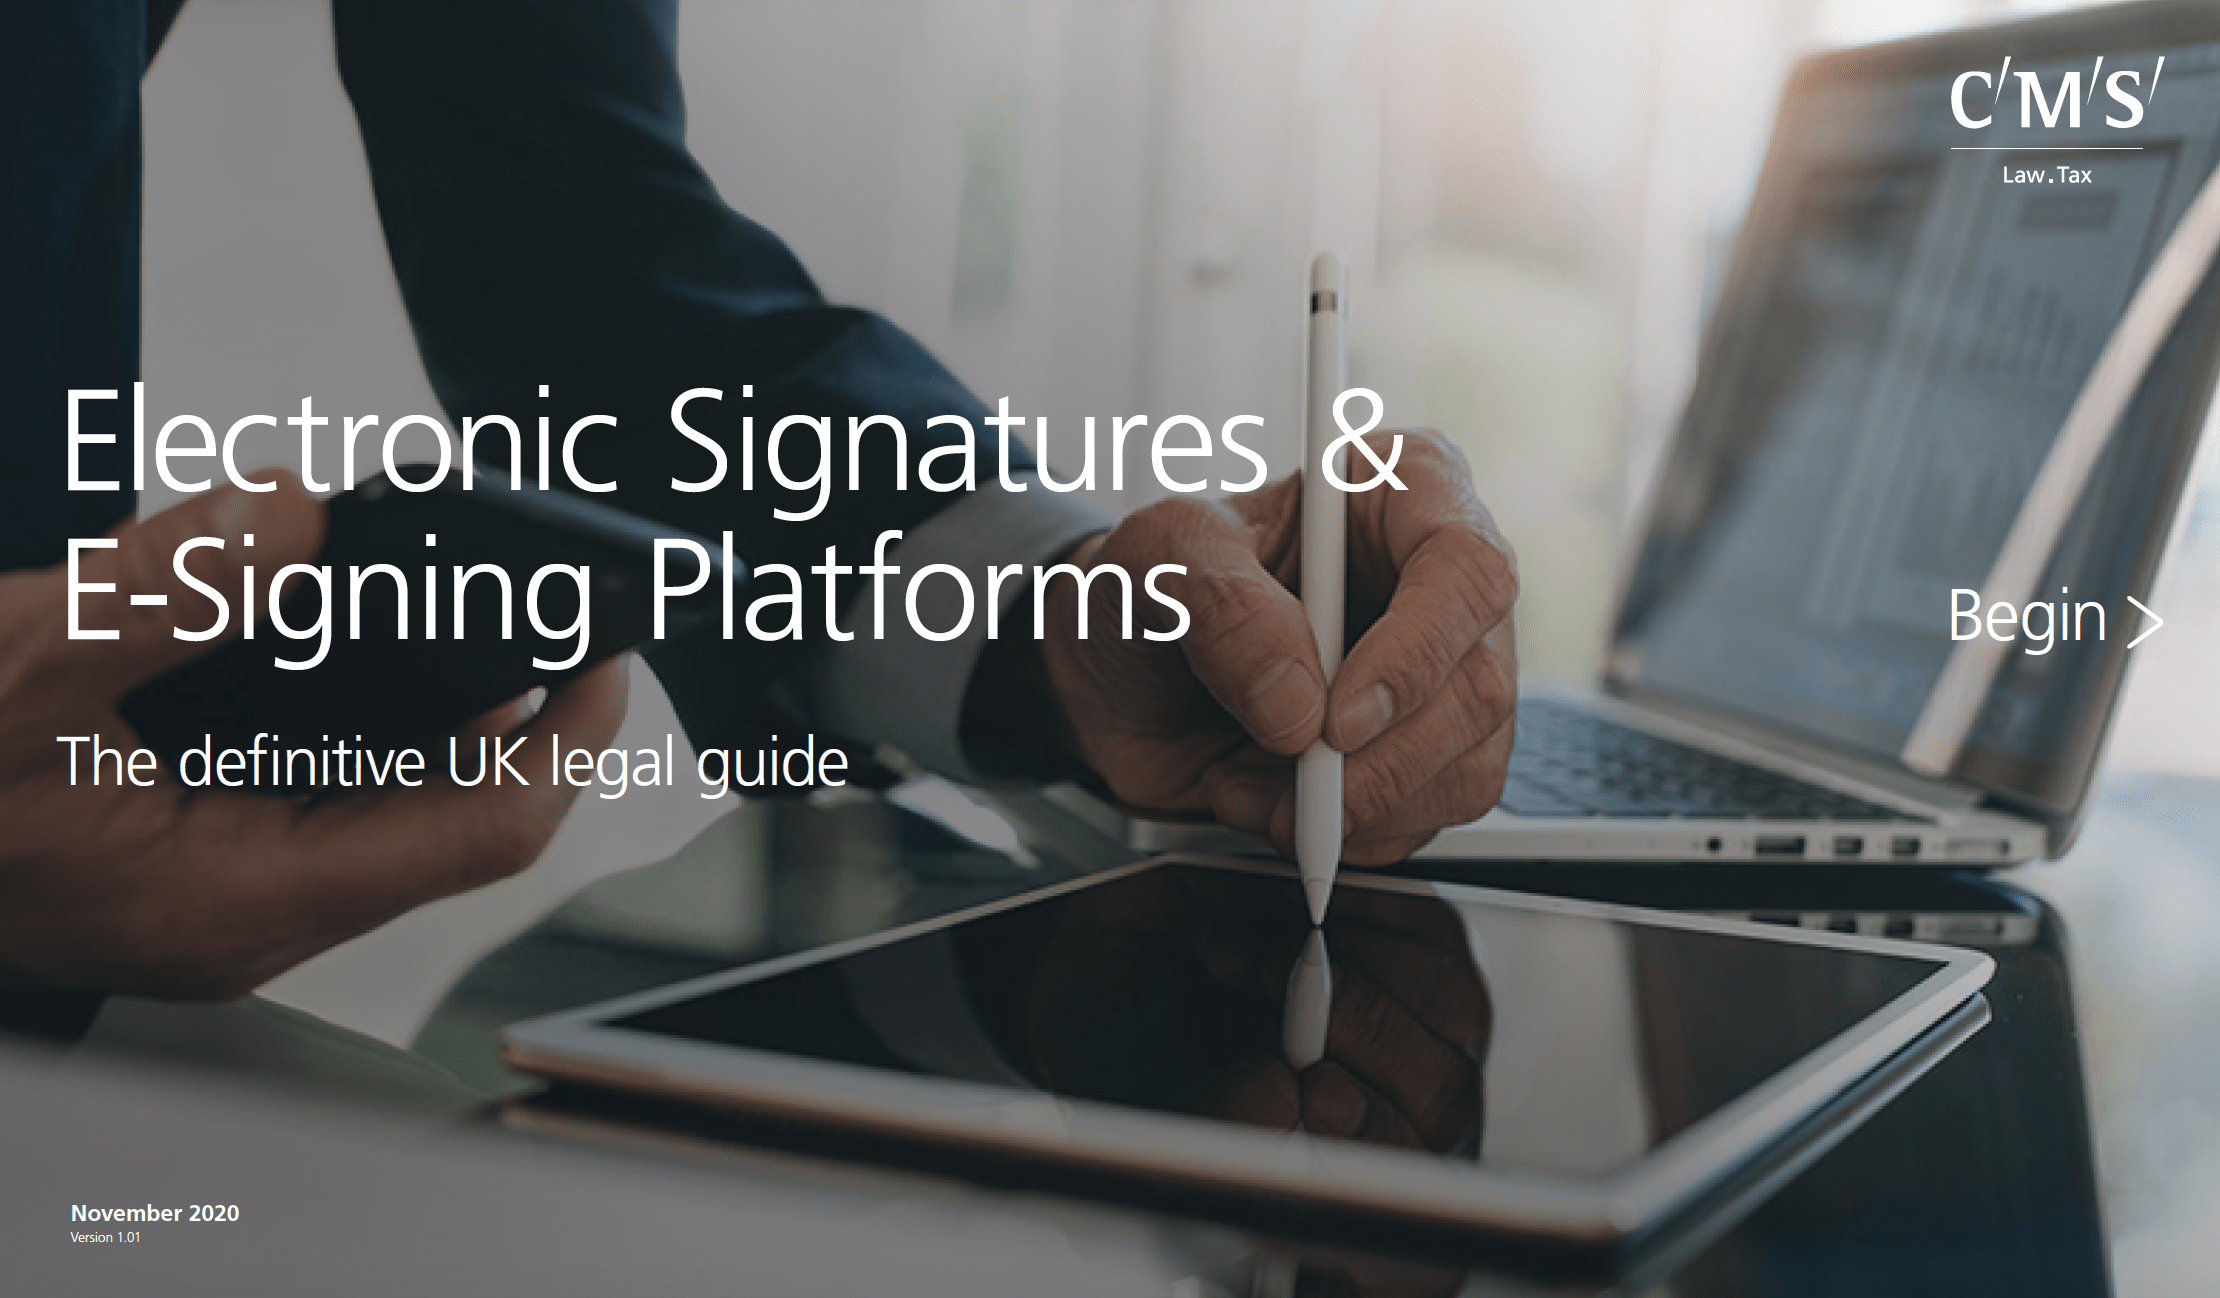 Member News: CMS – Electronic Signatures & E-Signing Platforms